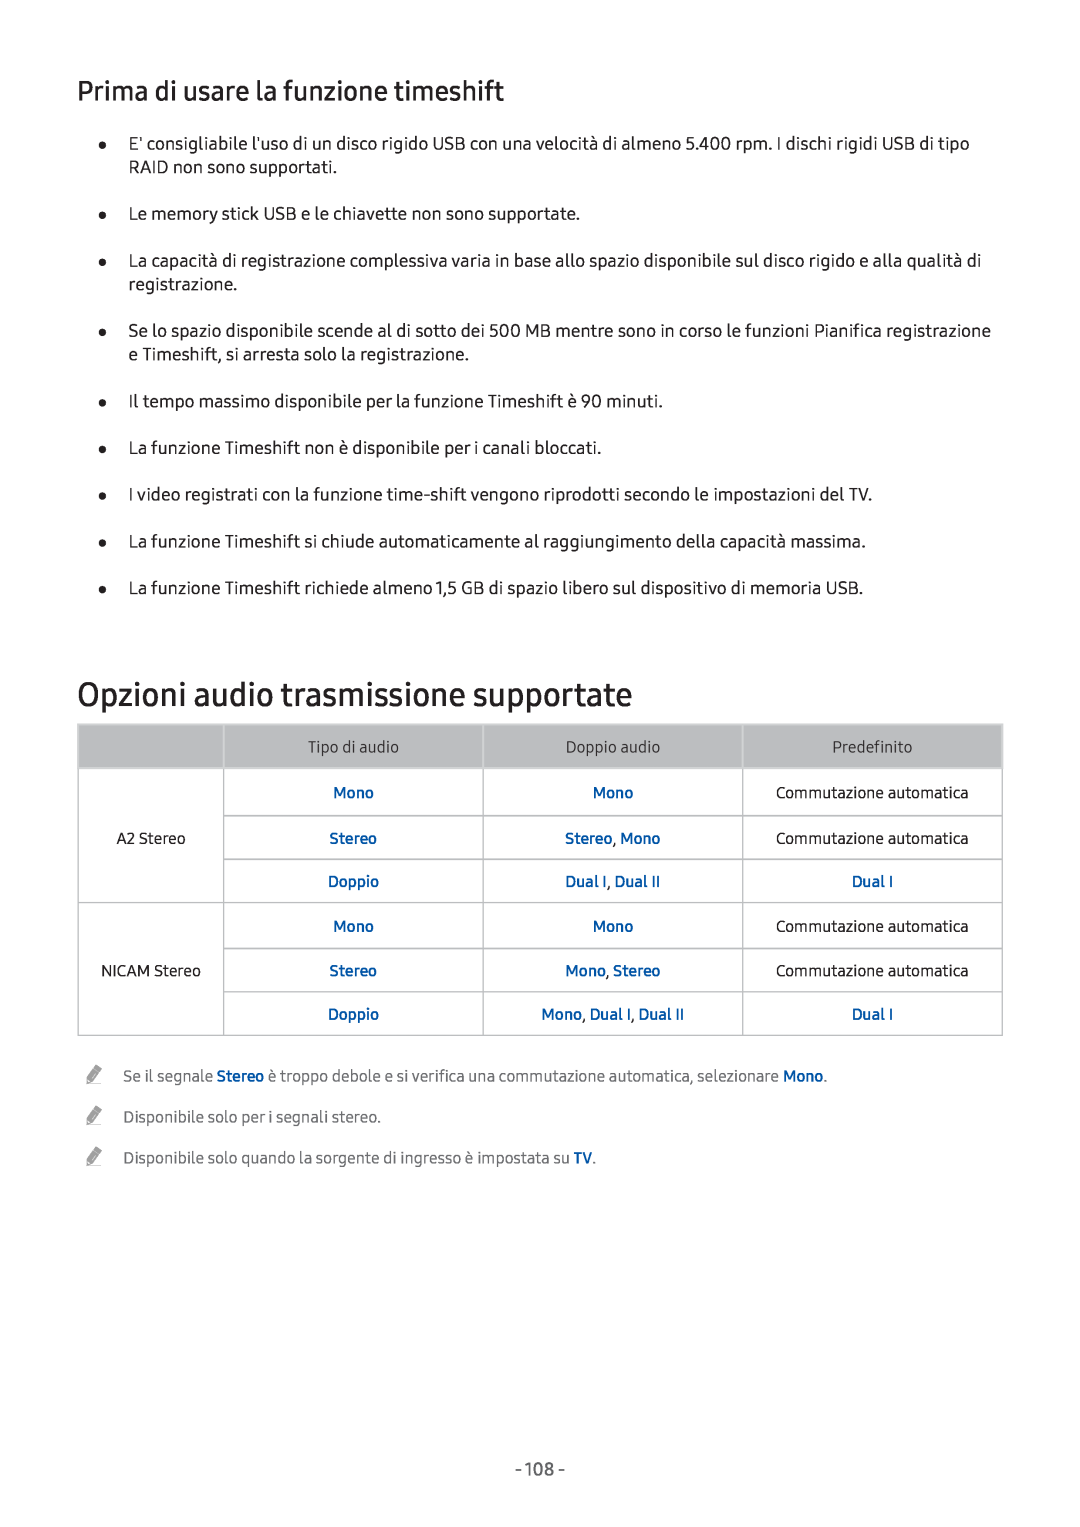 Samsung UE32M5590AUXZG, UE55M5570AUXZG manual Opzioni audio trasmissione supportate, Prima di usare la funzione timeshift 